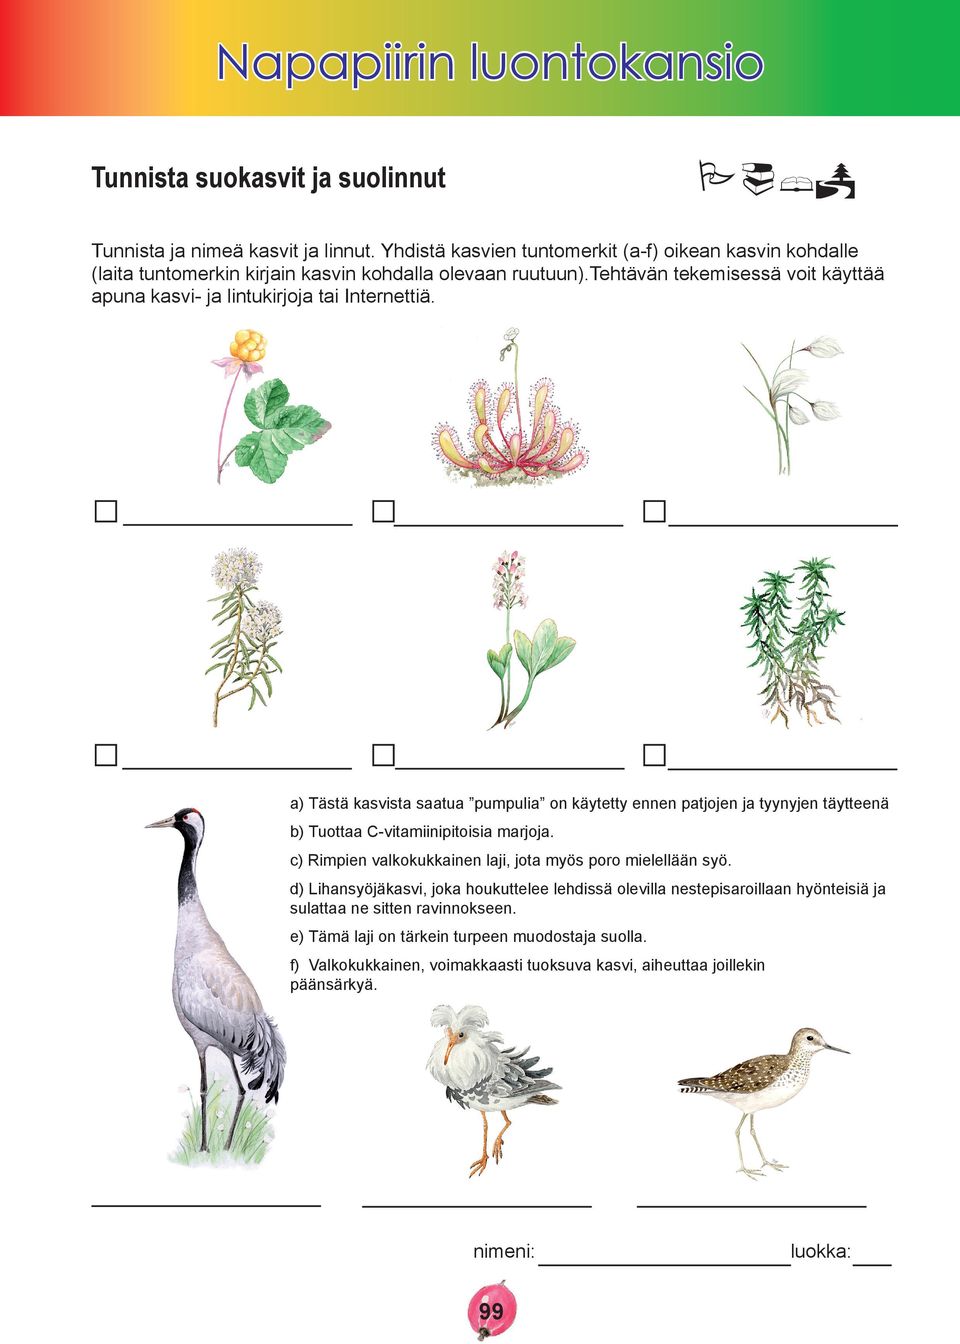 tehtävän tekemisessä voit käyttää apuna kasvi- ja lintukirjoja tai Internettiä.